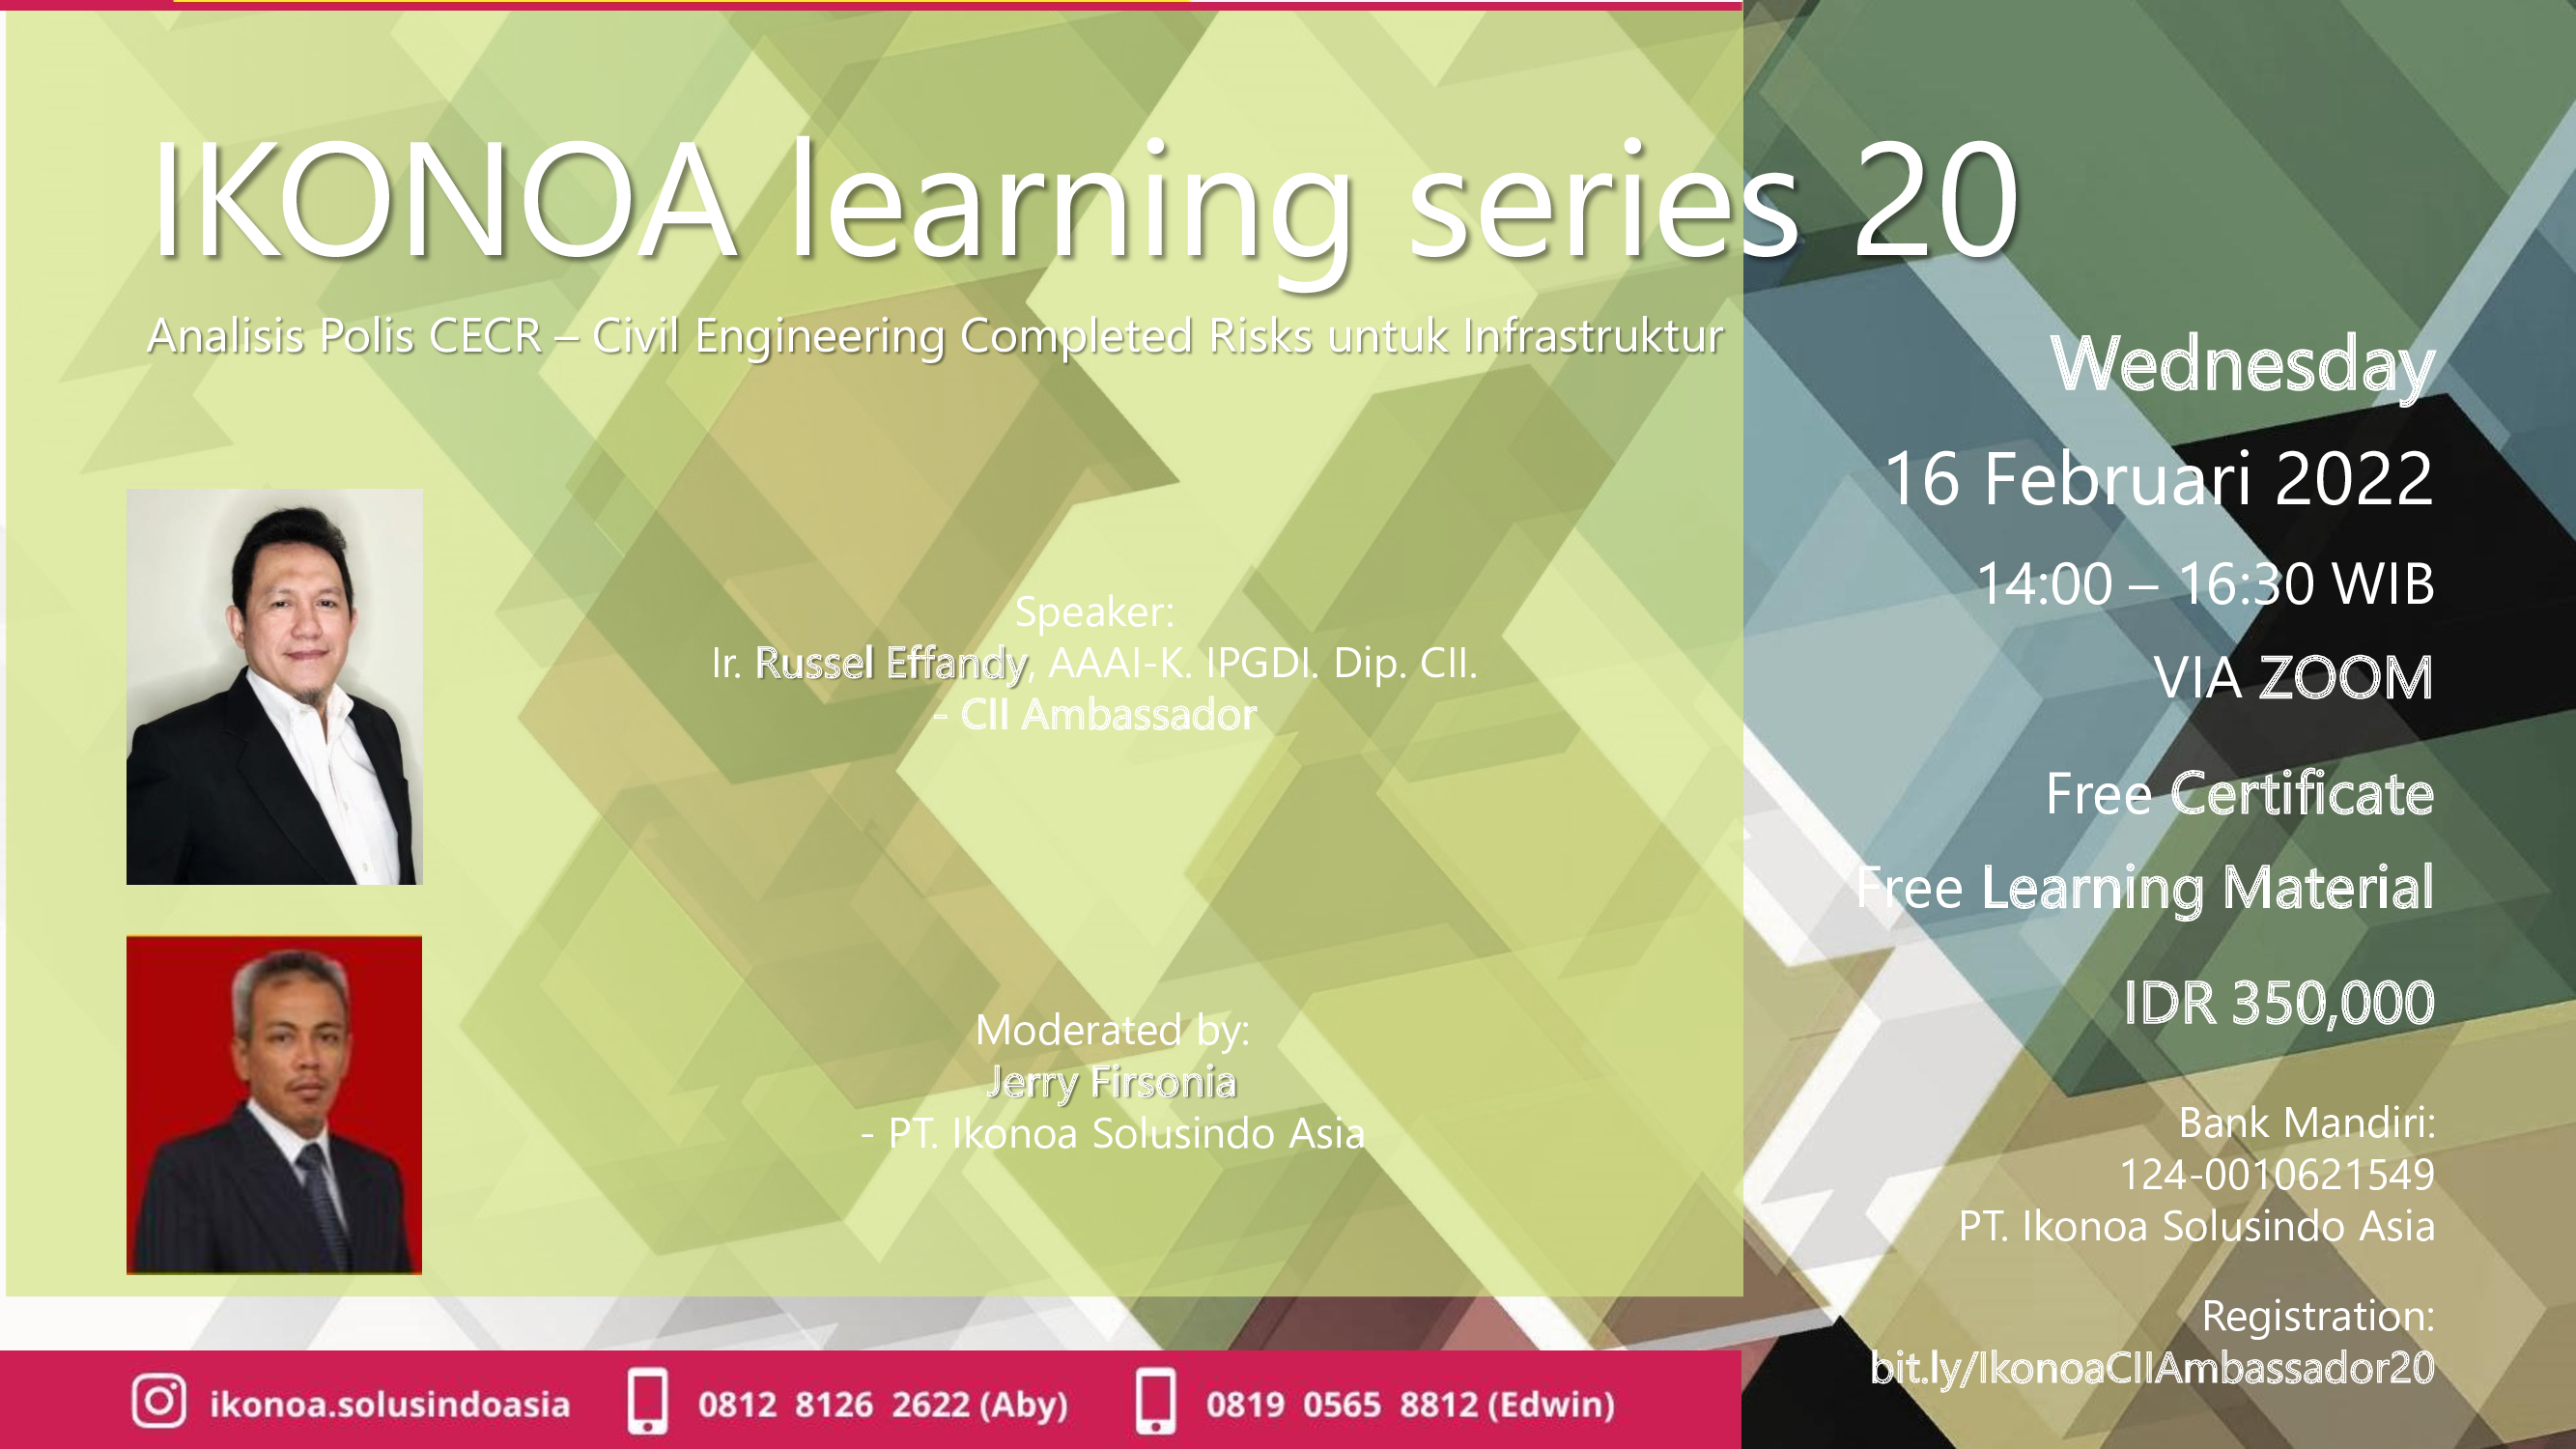 ikonoa-learning-series-20-flyer